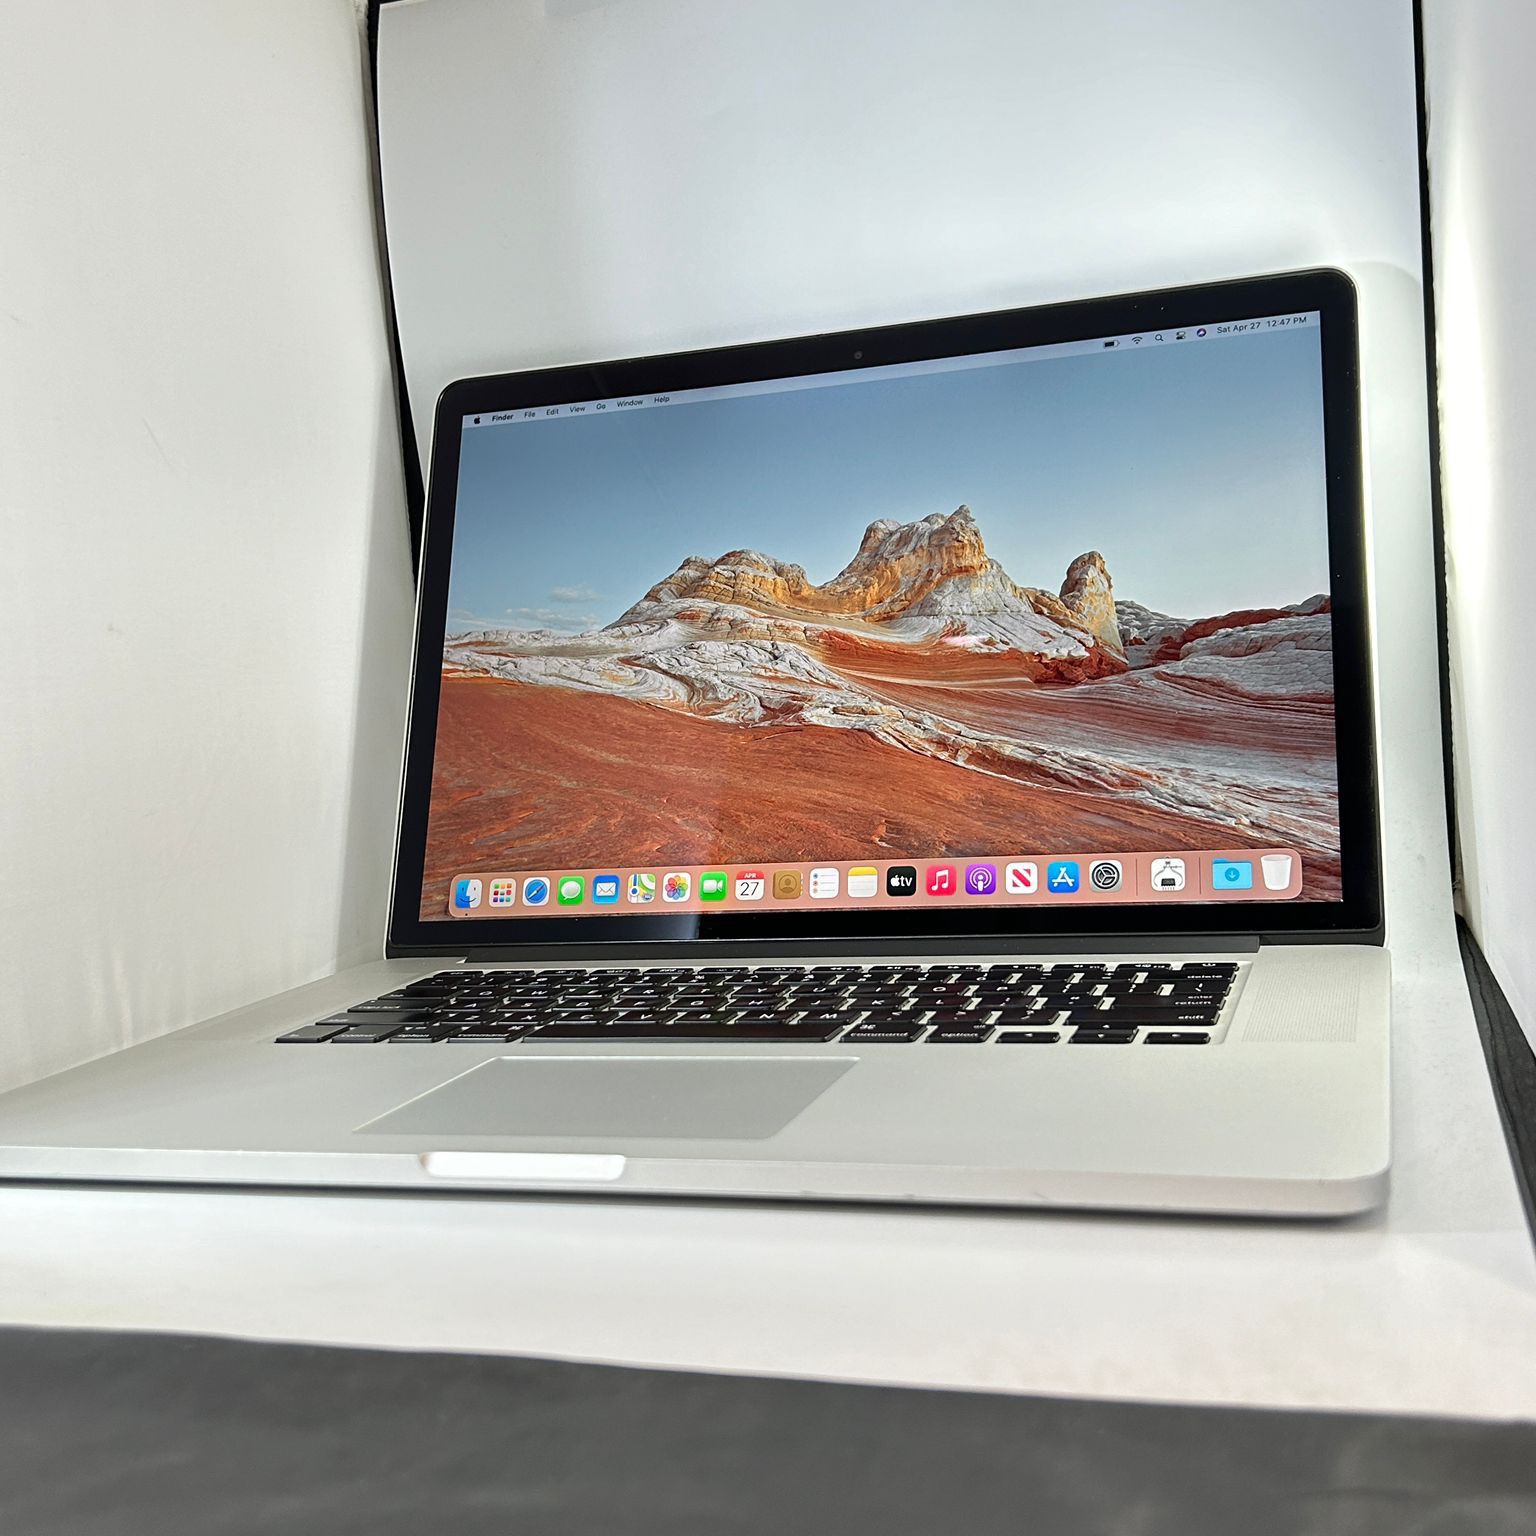 Apple MacBook Pro 15” Retina 2.8Ghz i7 16GB RAM 1TB SSD Nvidia GT 750M 2GB VRAM $375